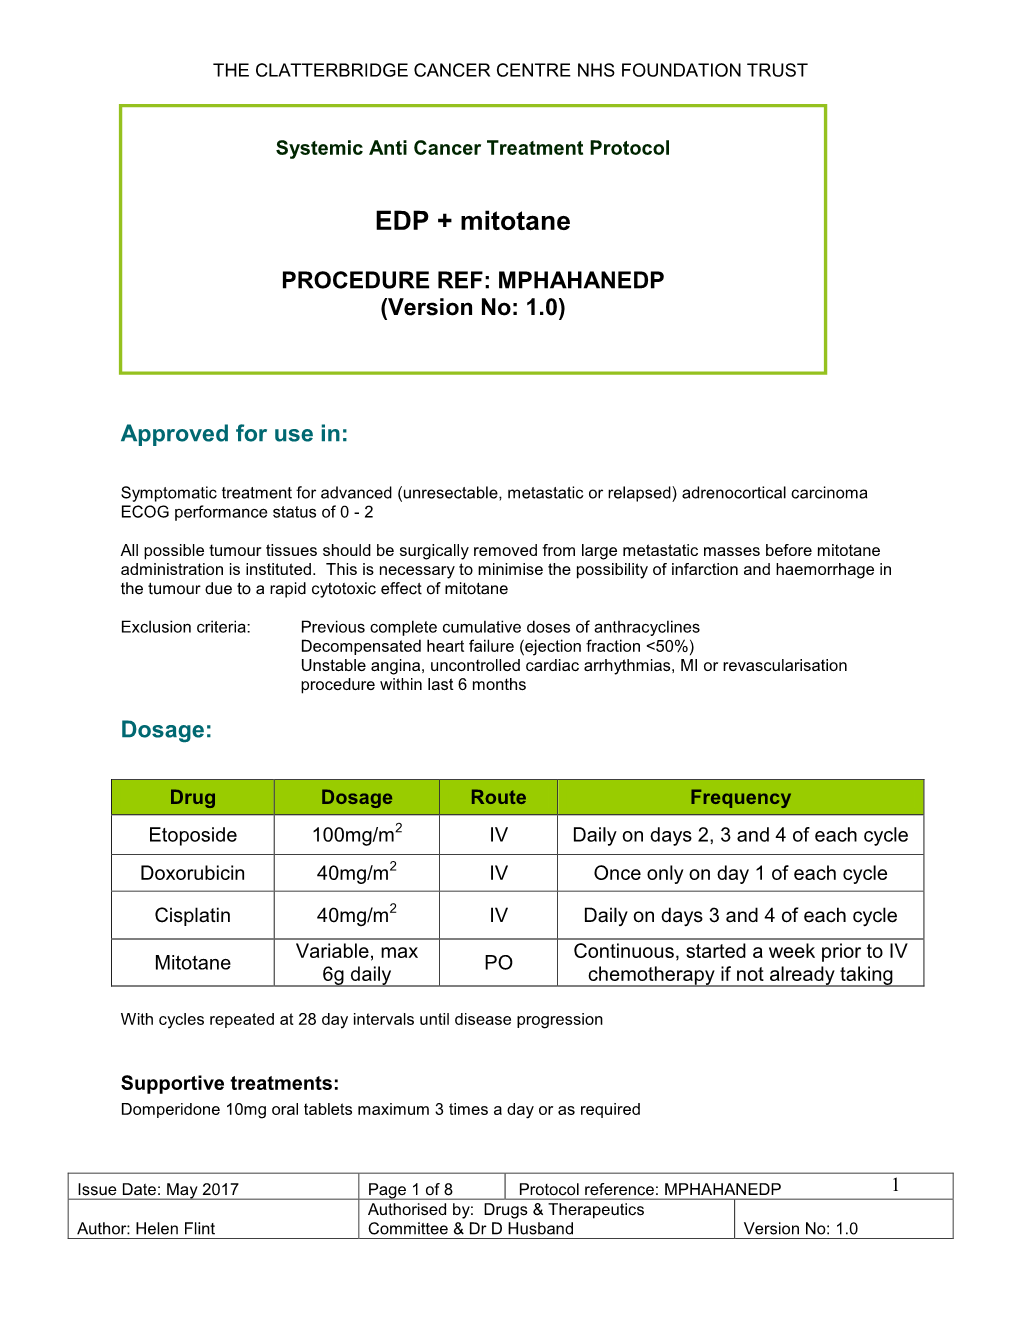 EDP & Mitotane Protocol